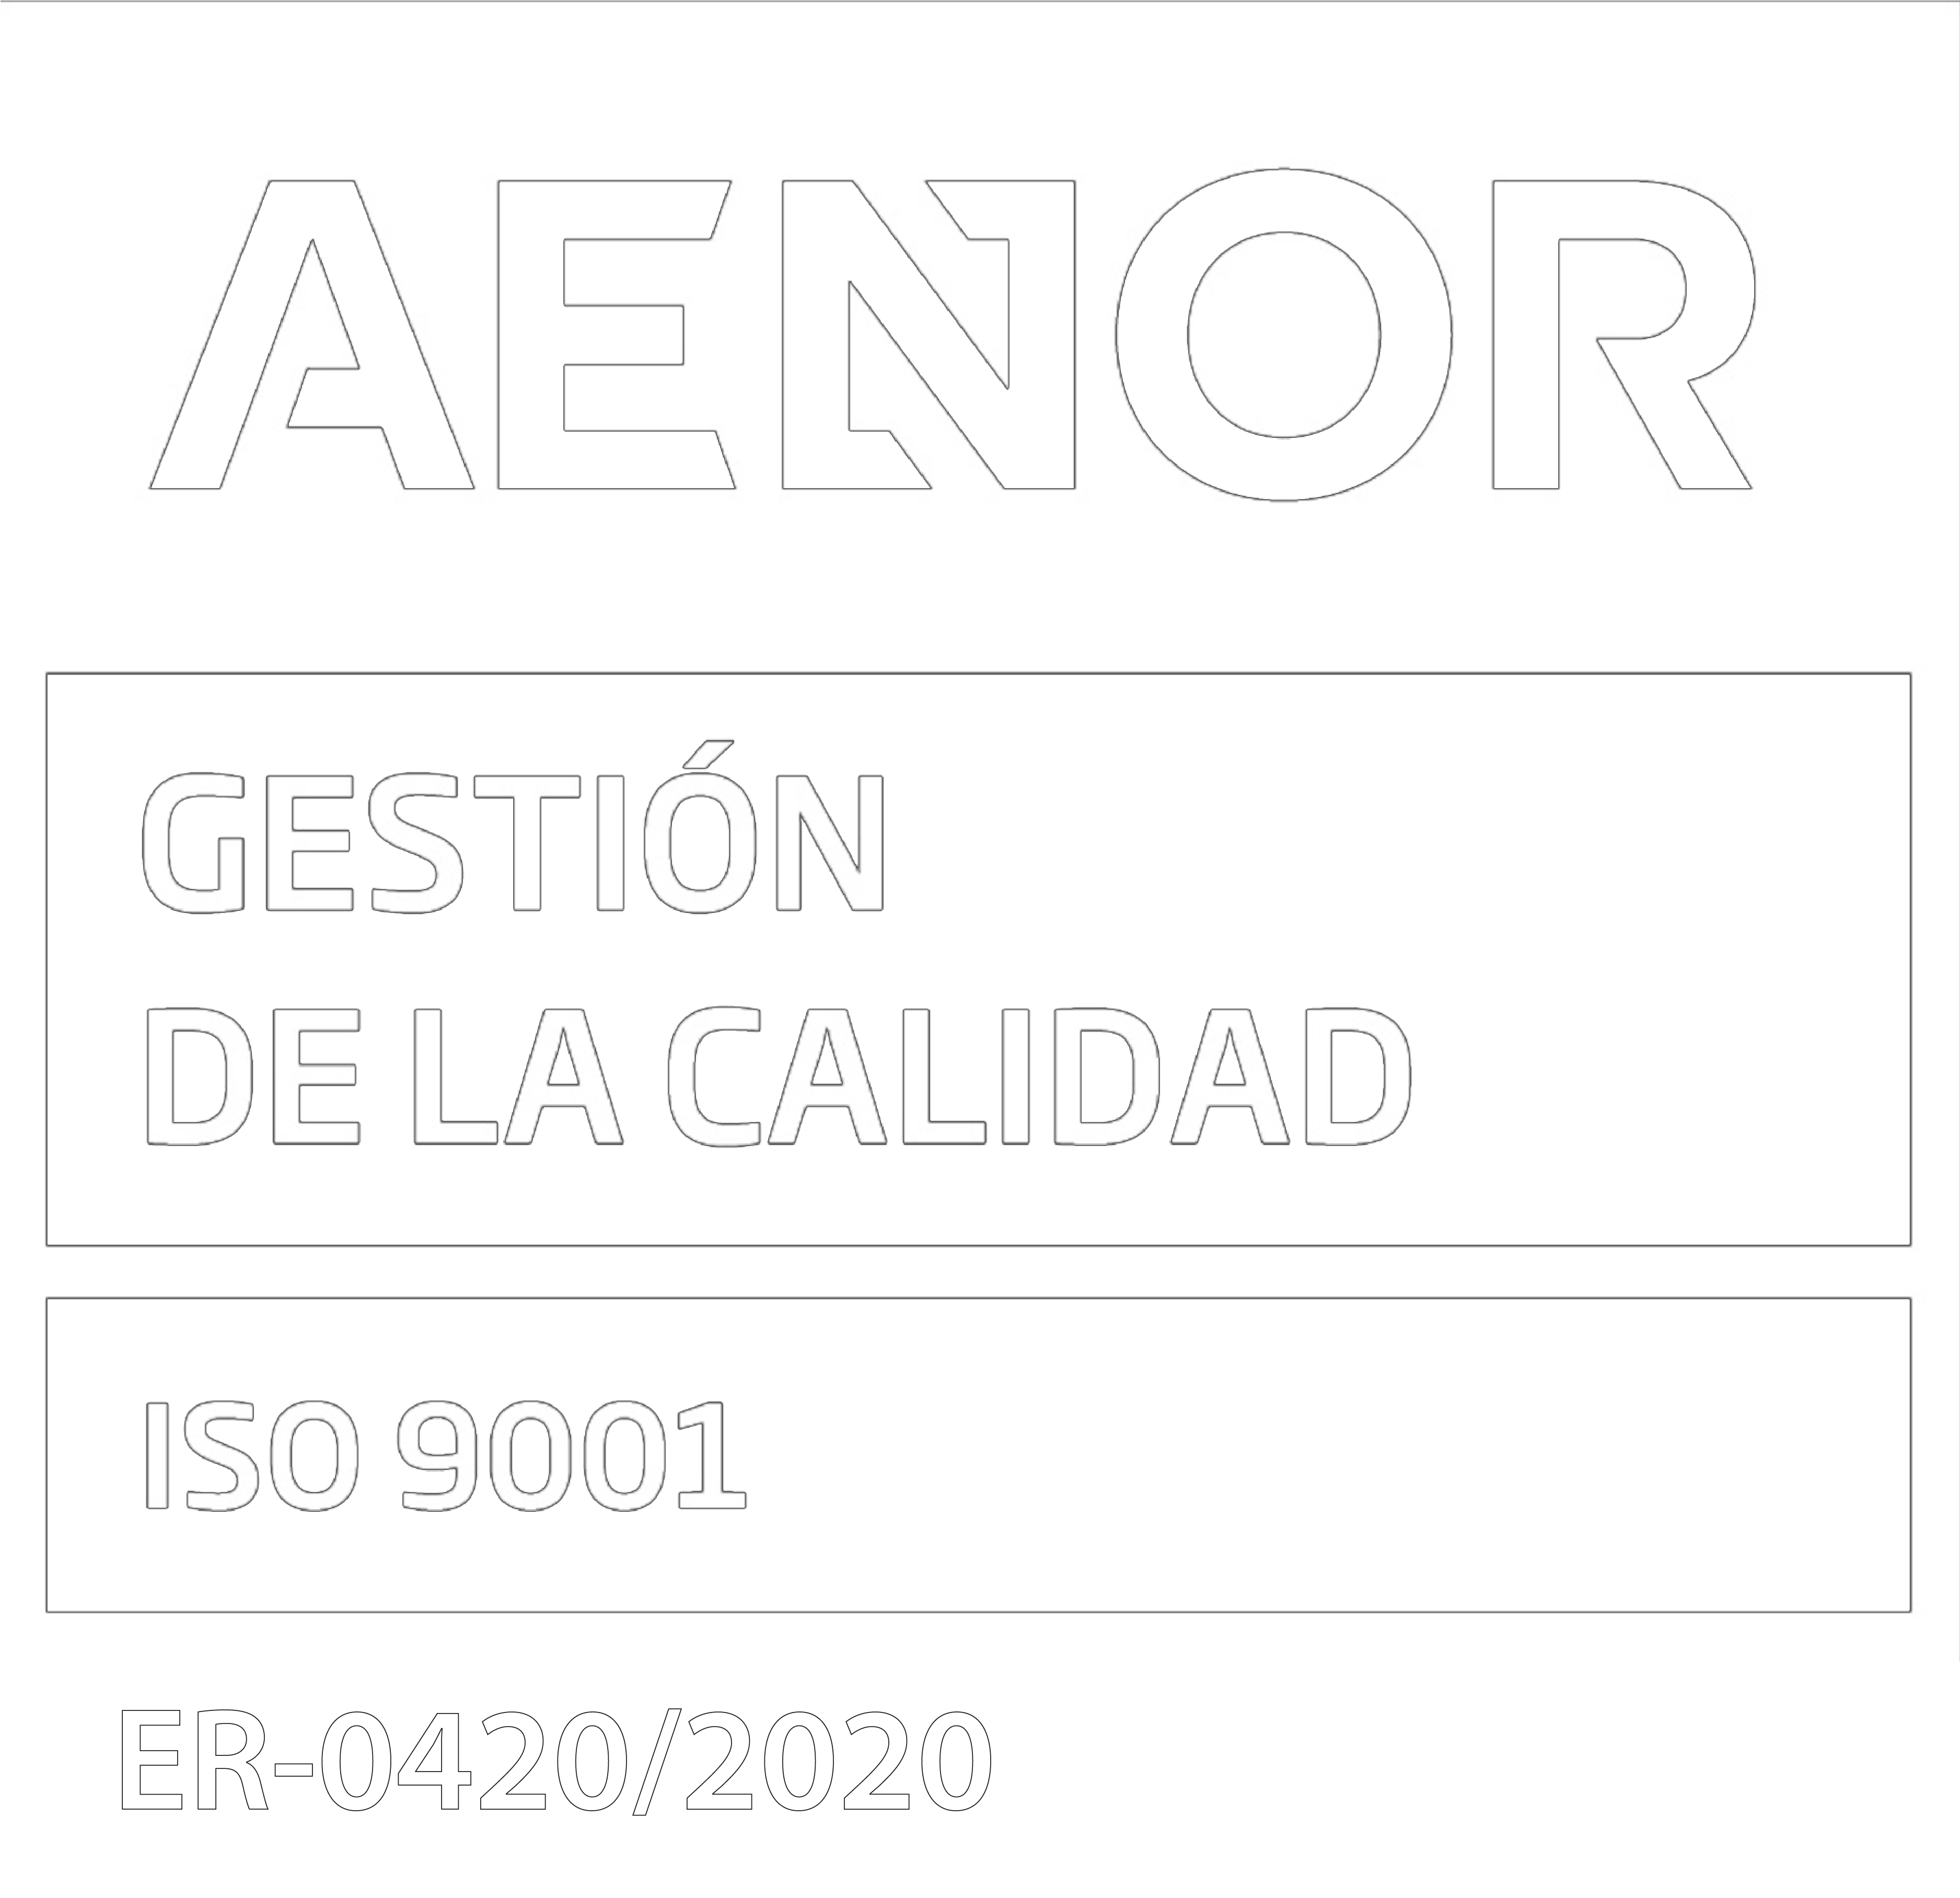 AENOR Gestión Calidad - ISO 9001